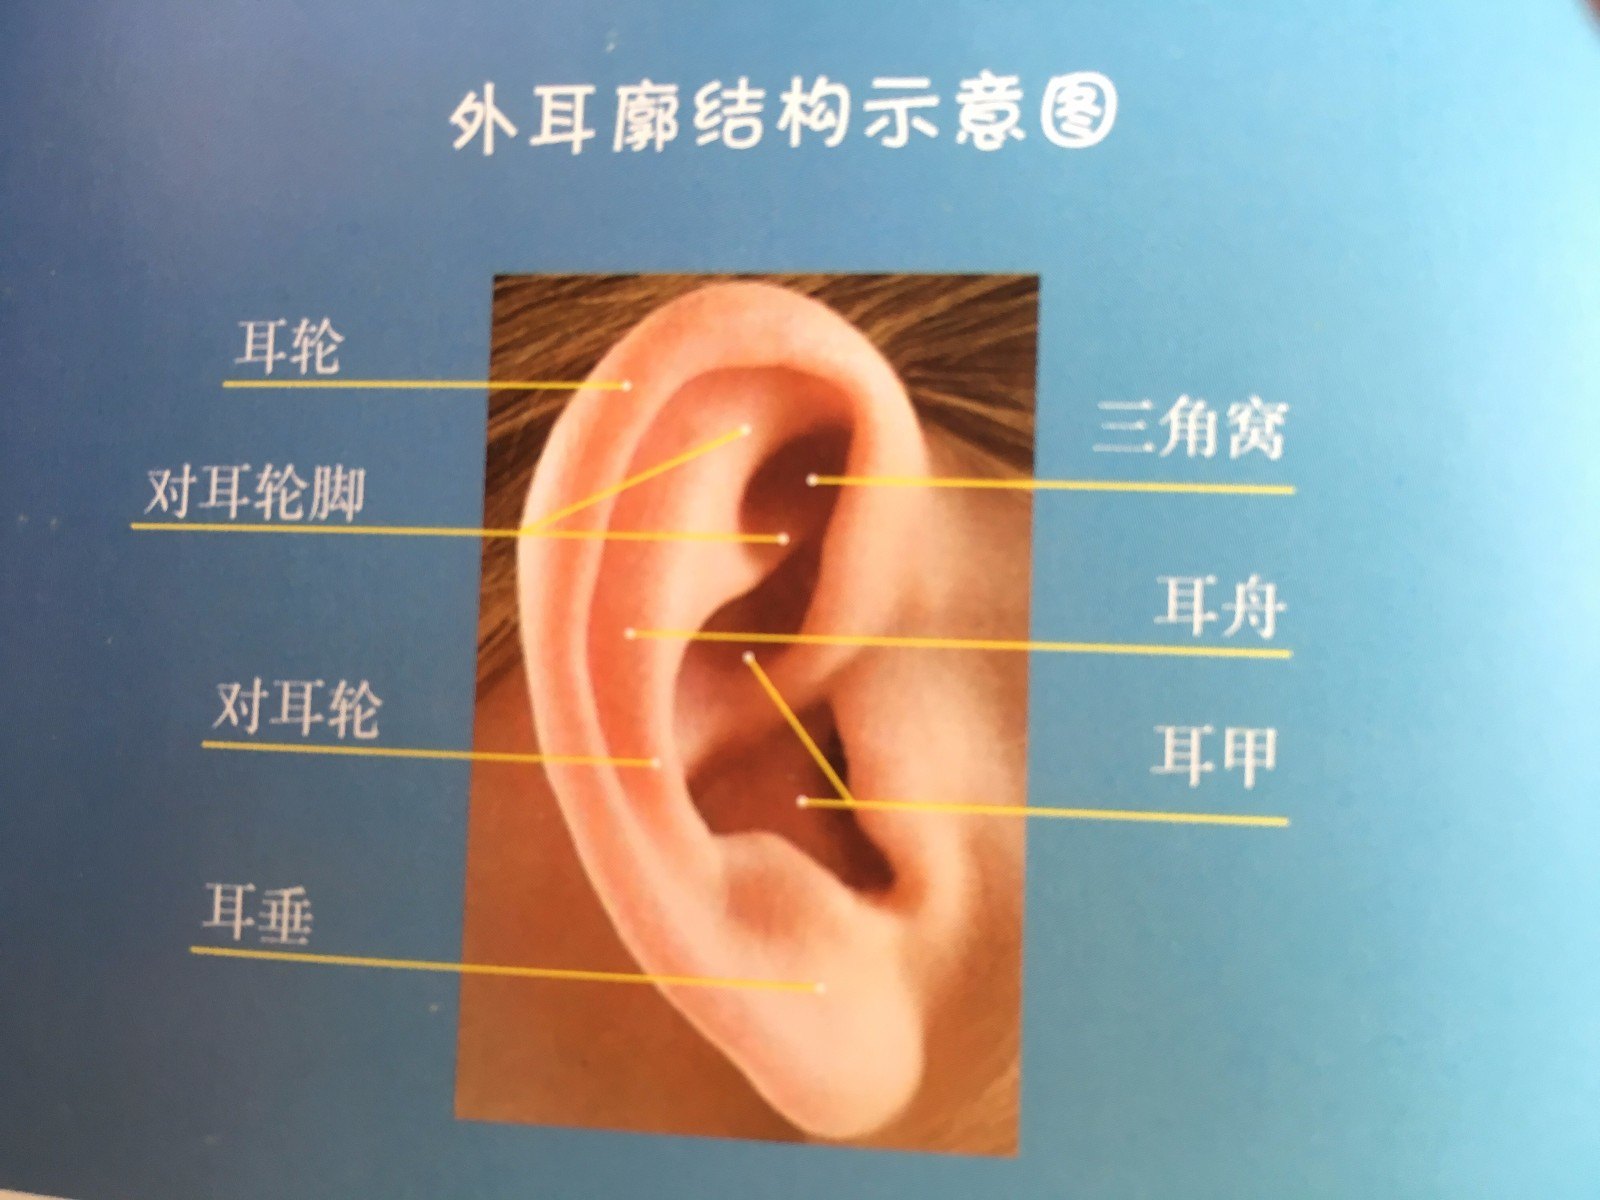 先天性耳廓畸形耳模矫正技术专家共识